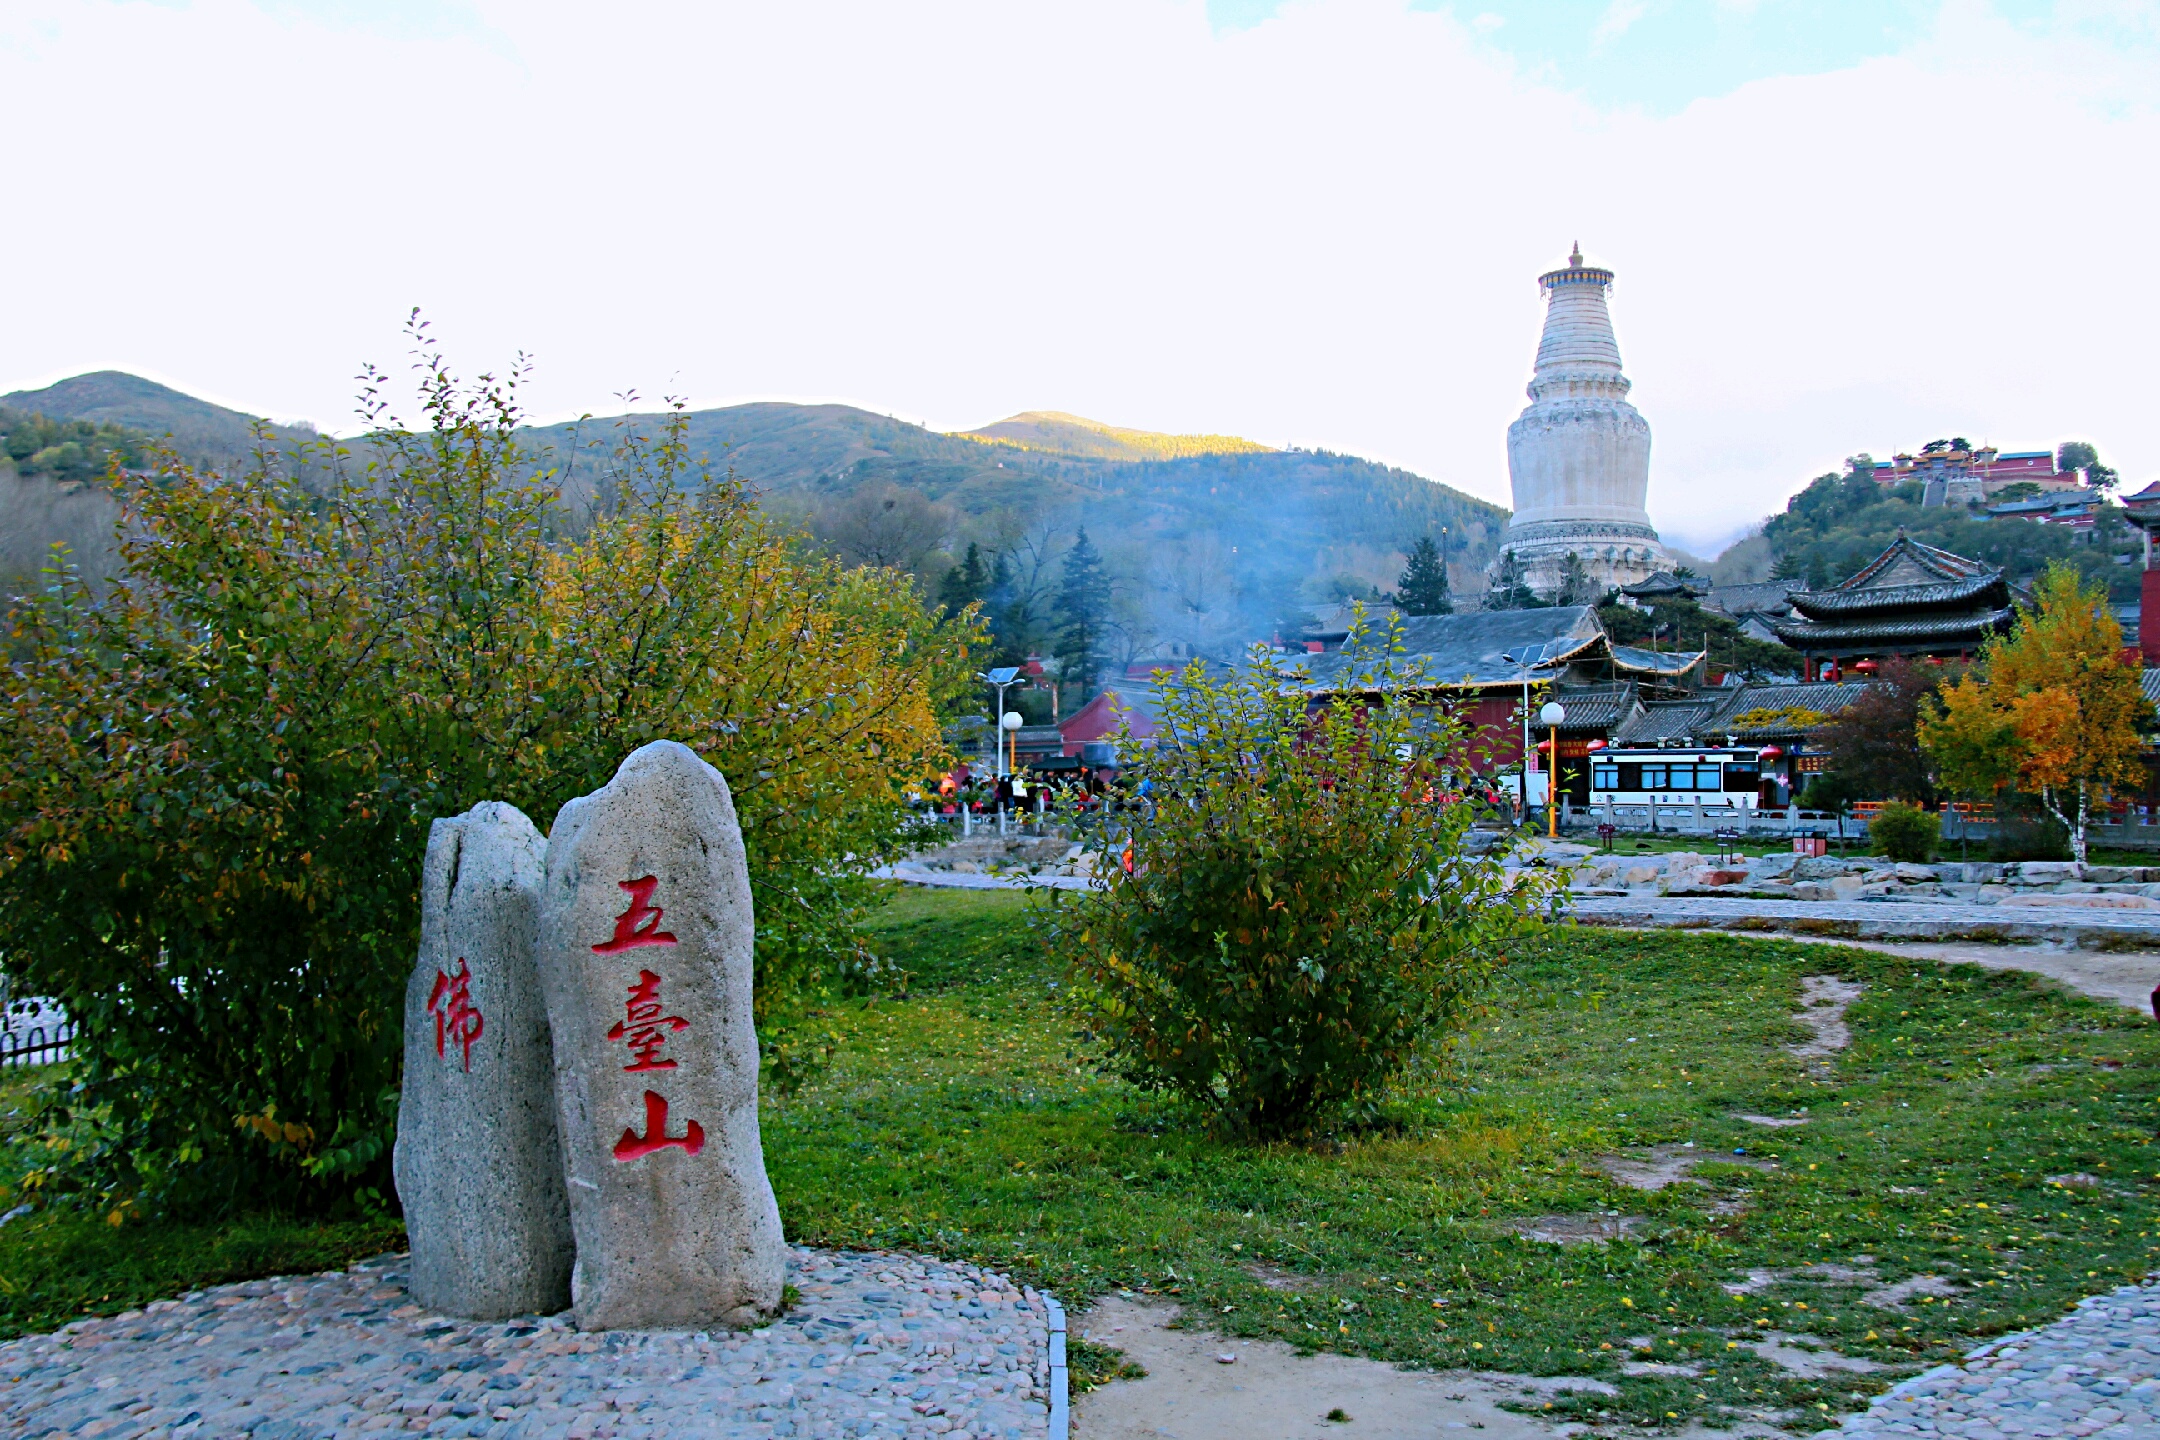 忻州旅游图片,忻州自助游图片,忻州旅游景点照片 - 马